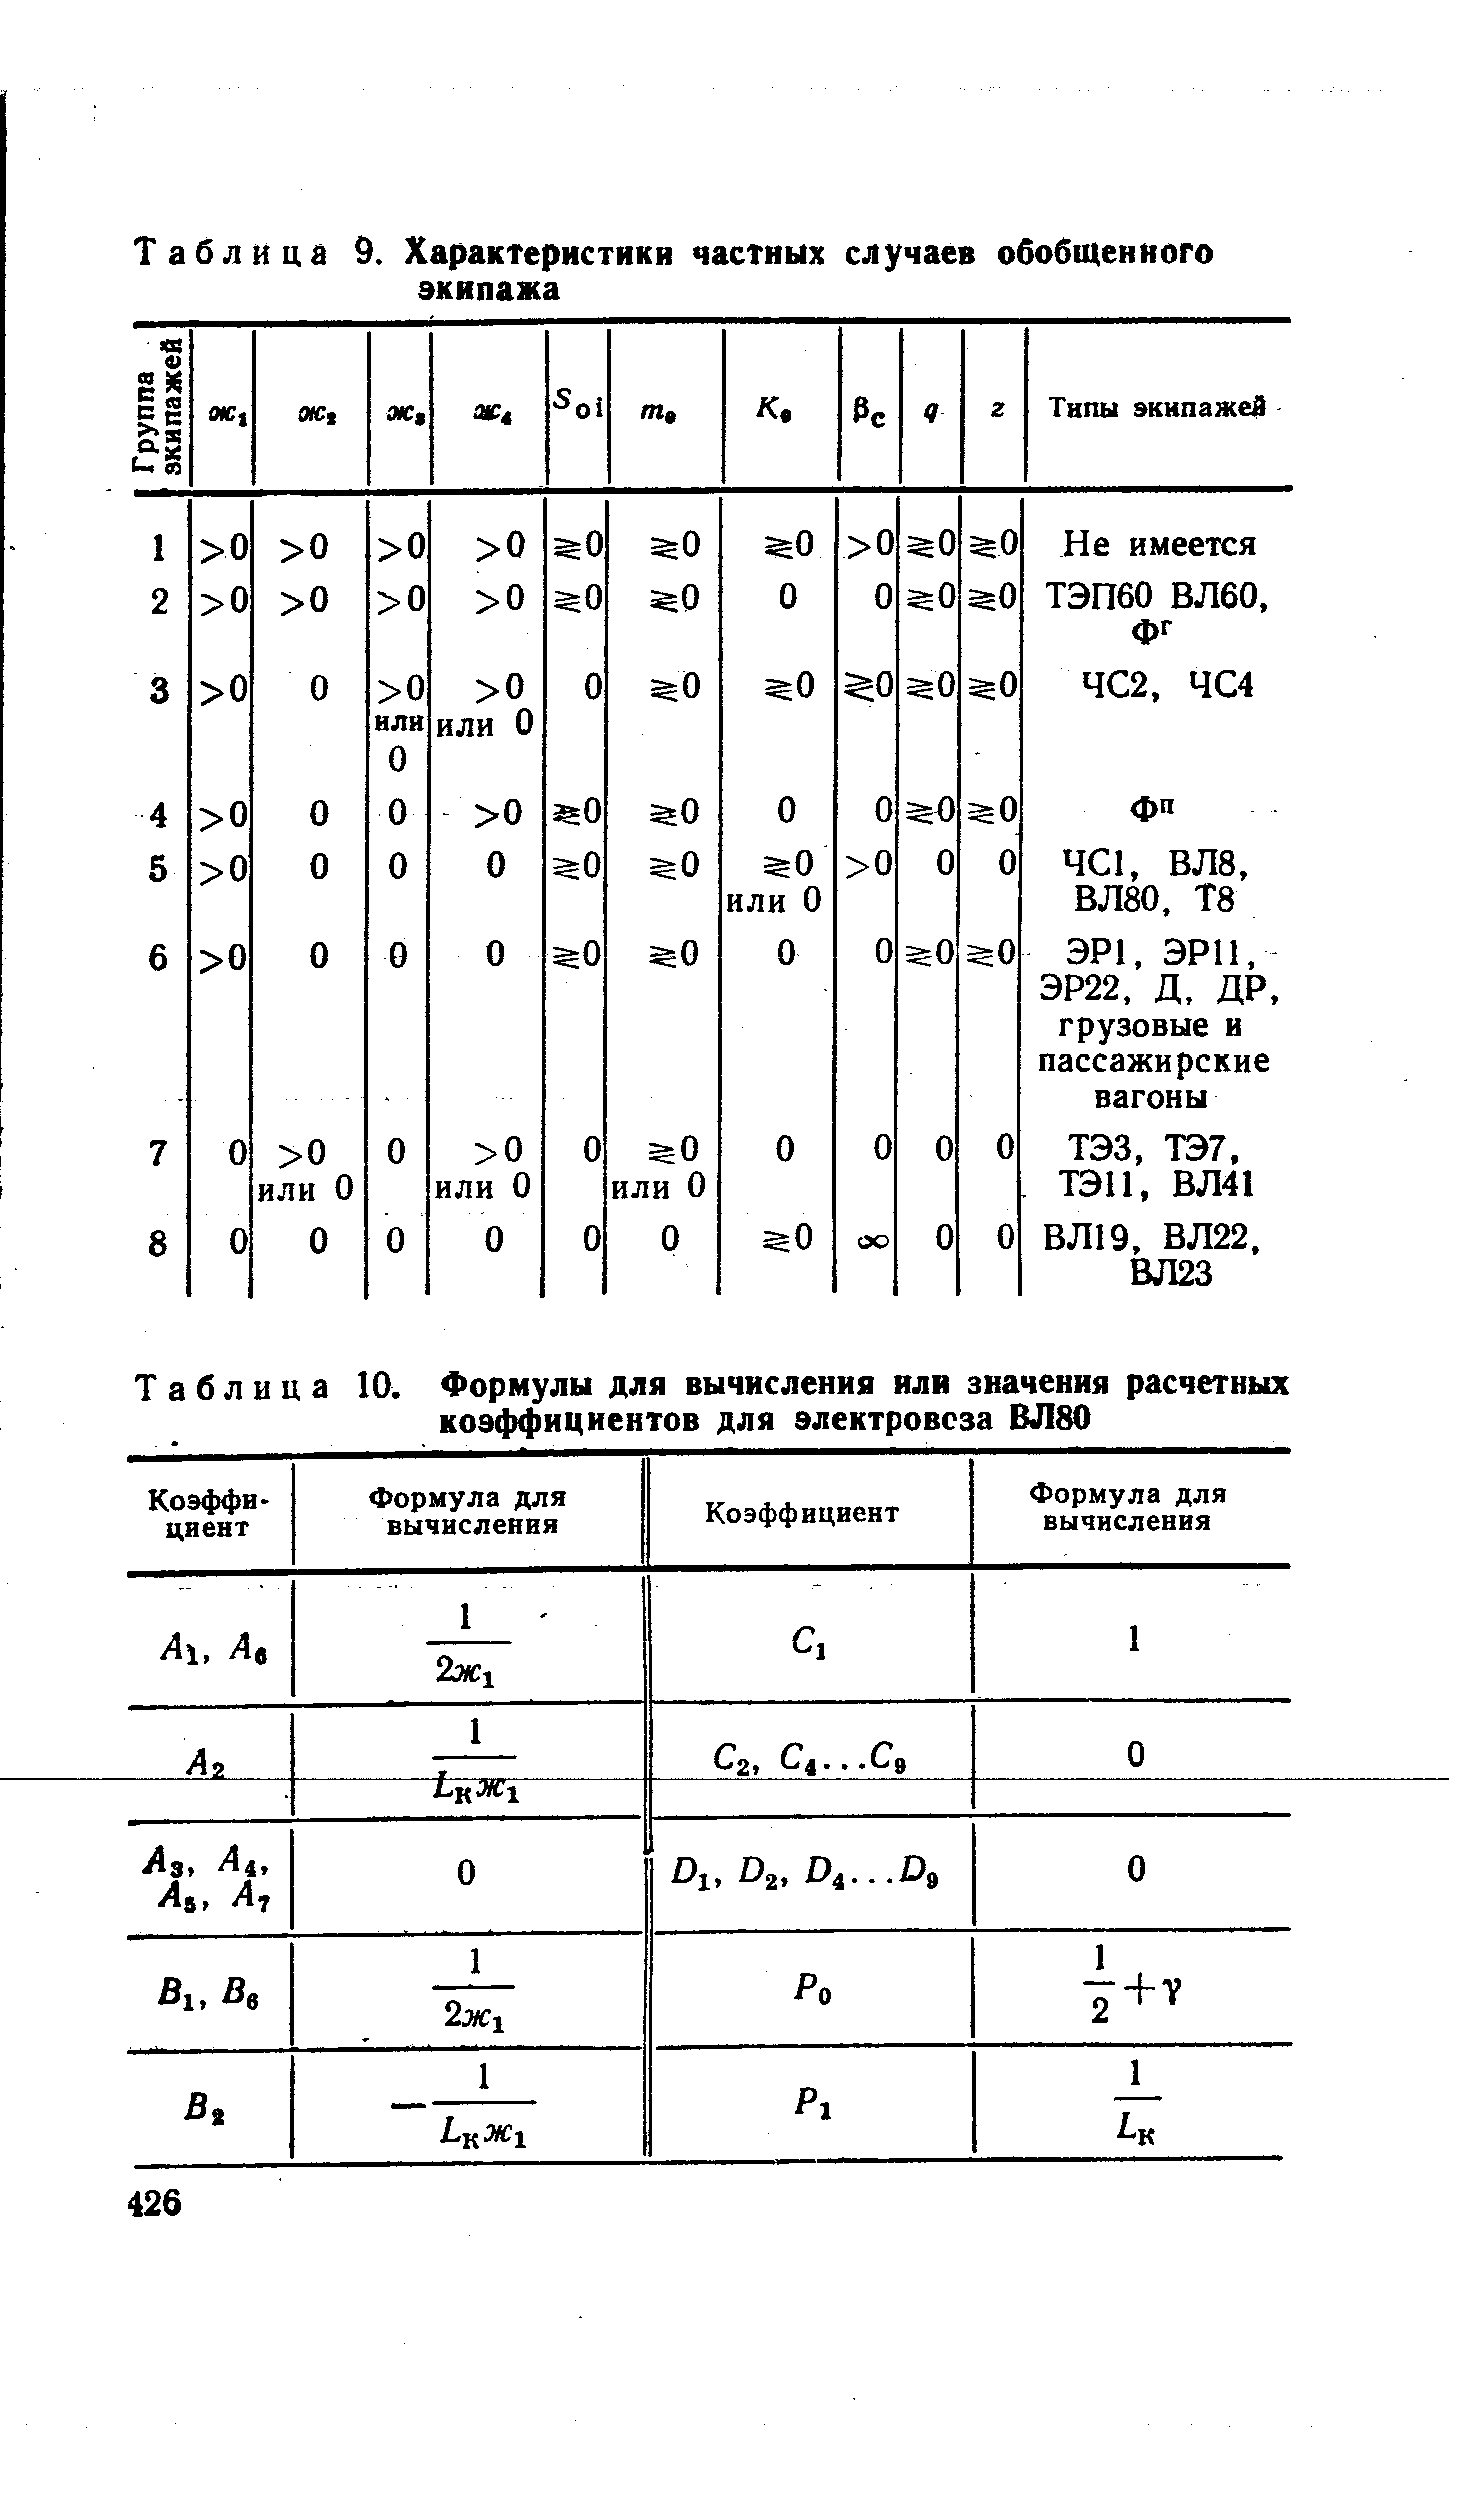 Таблица 10. Формулы для вычисления илн значения расчетных коэффициентов для электровоза ВЛ80
